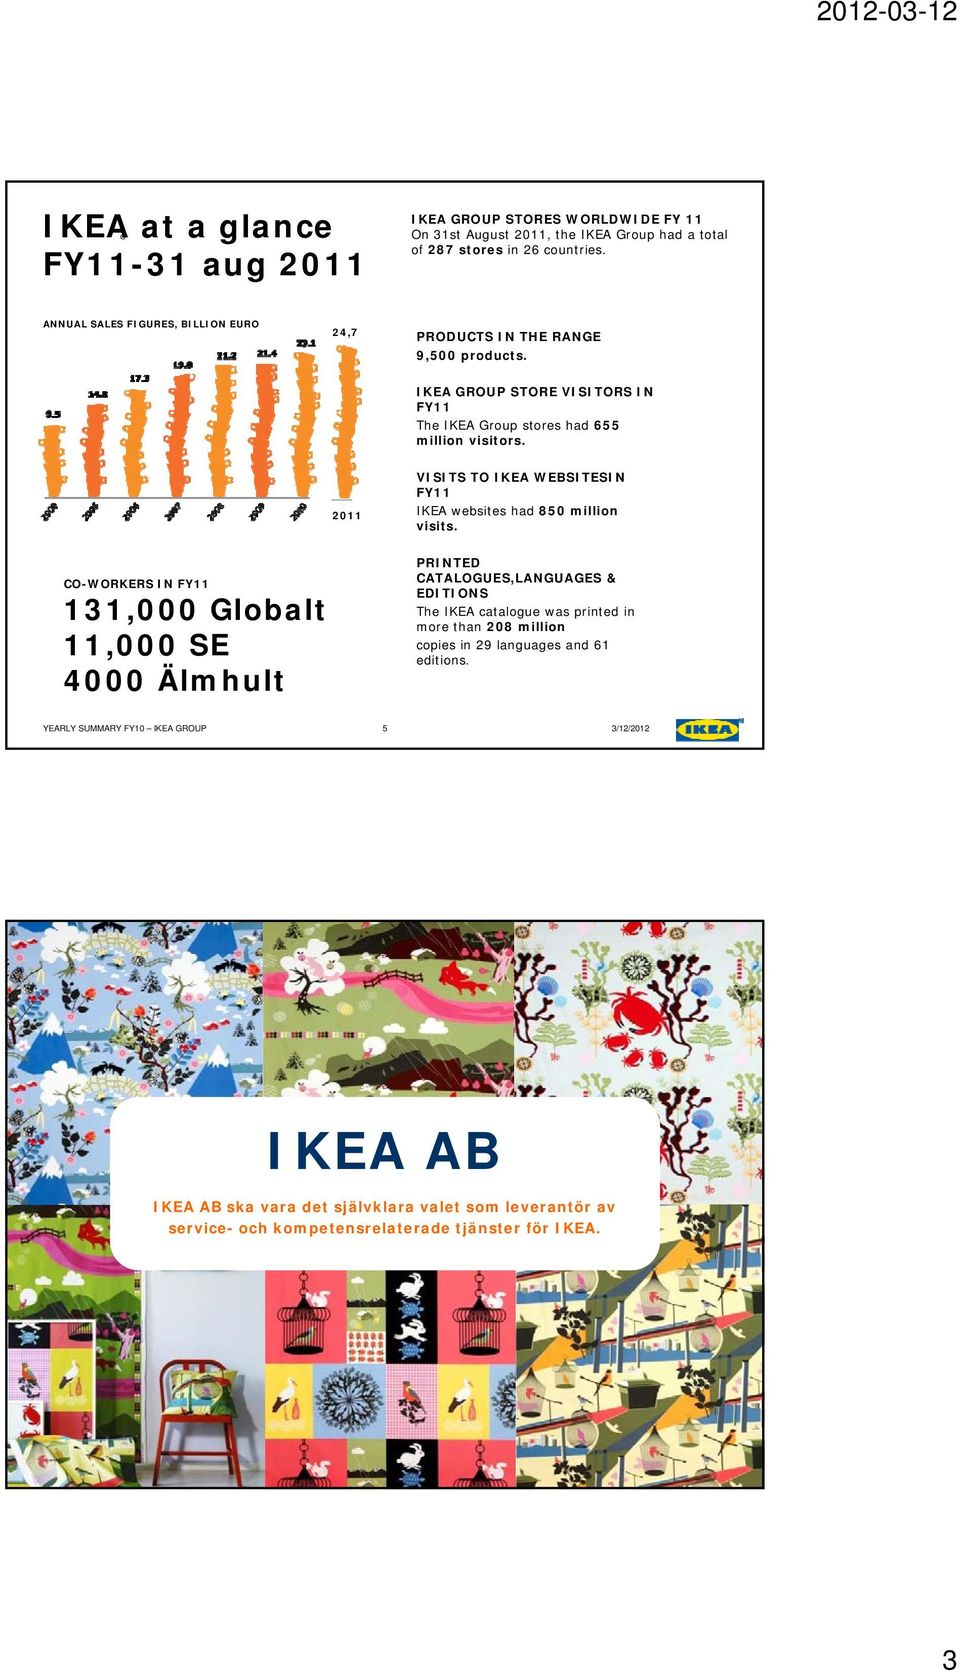 2011 VISITS TO IKEA WEBSITESIN FY11 IKEA websites had 850 million visits.